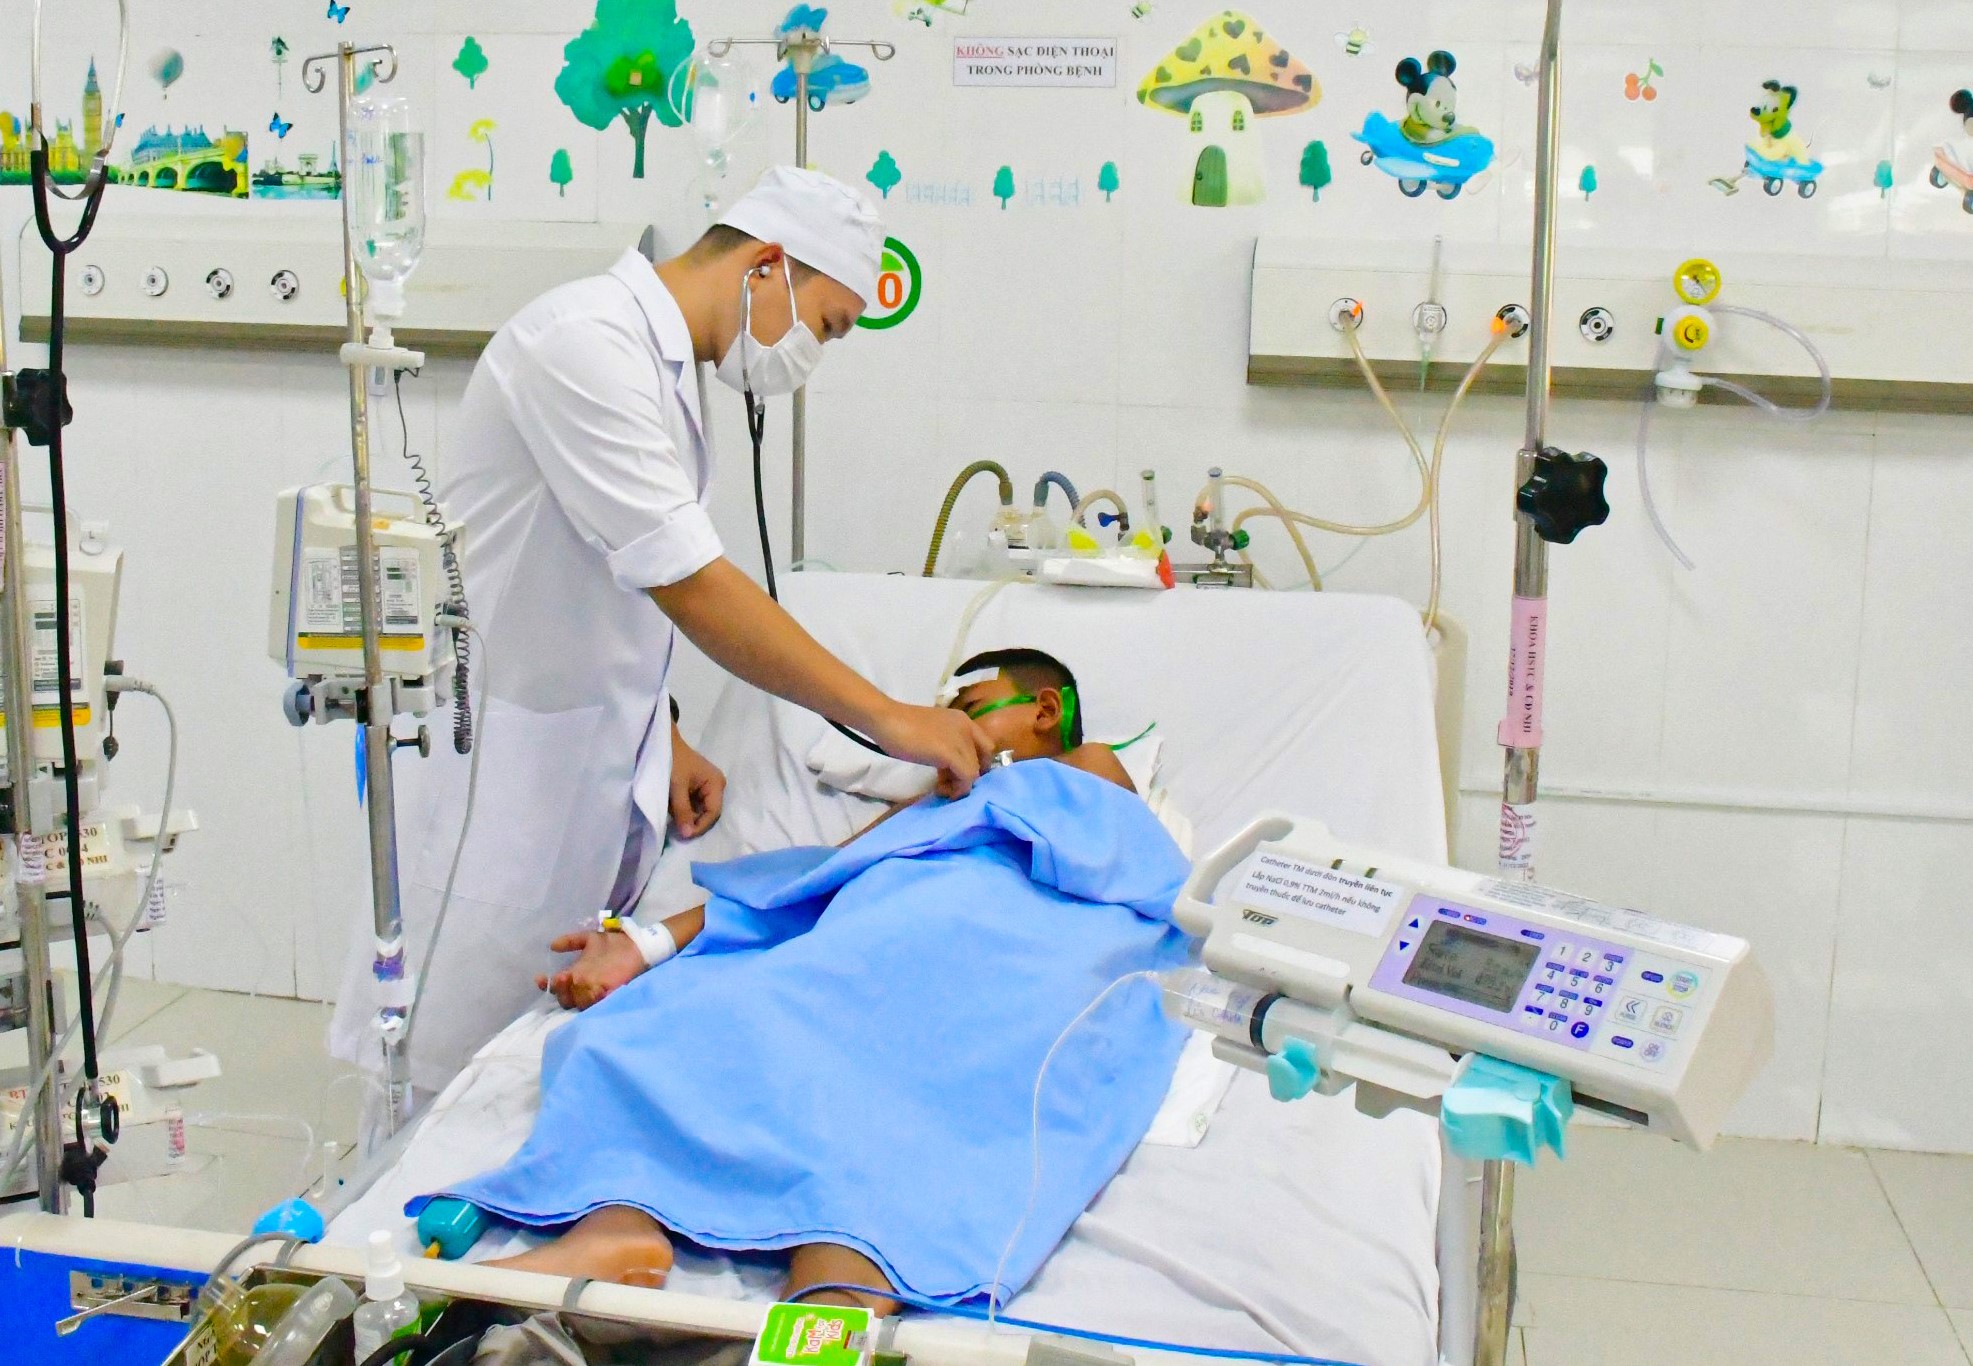 Bé trai đang điều trị tại bệnh viện - Ảnh: CTV